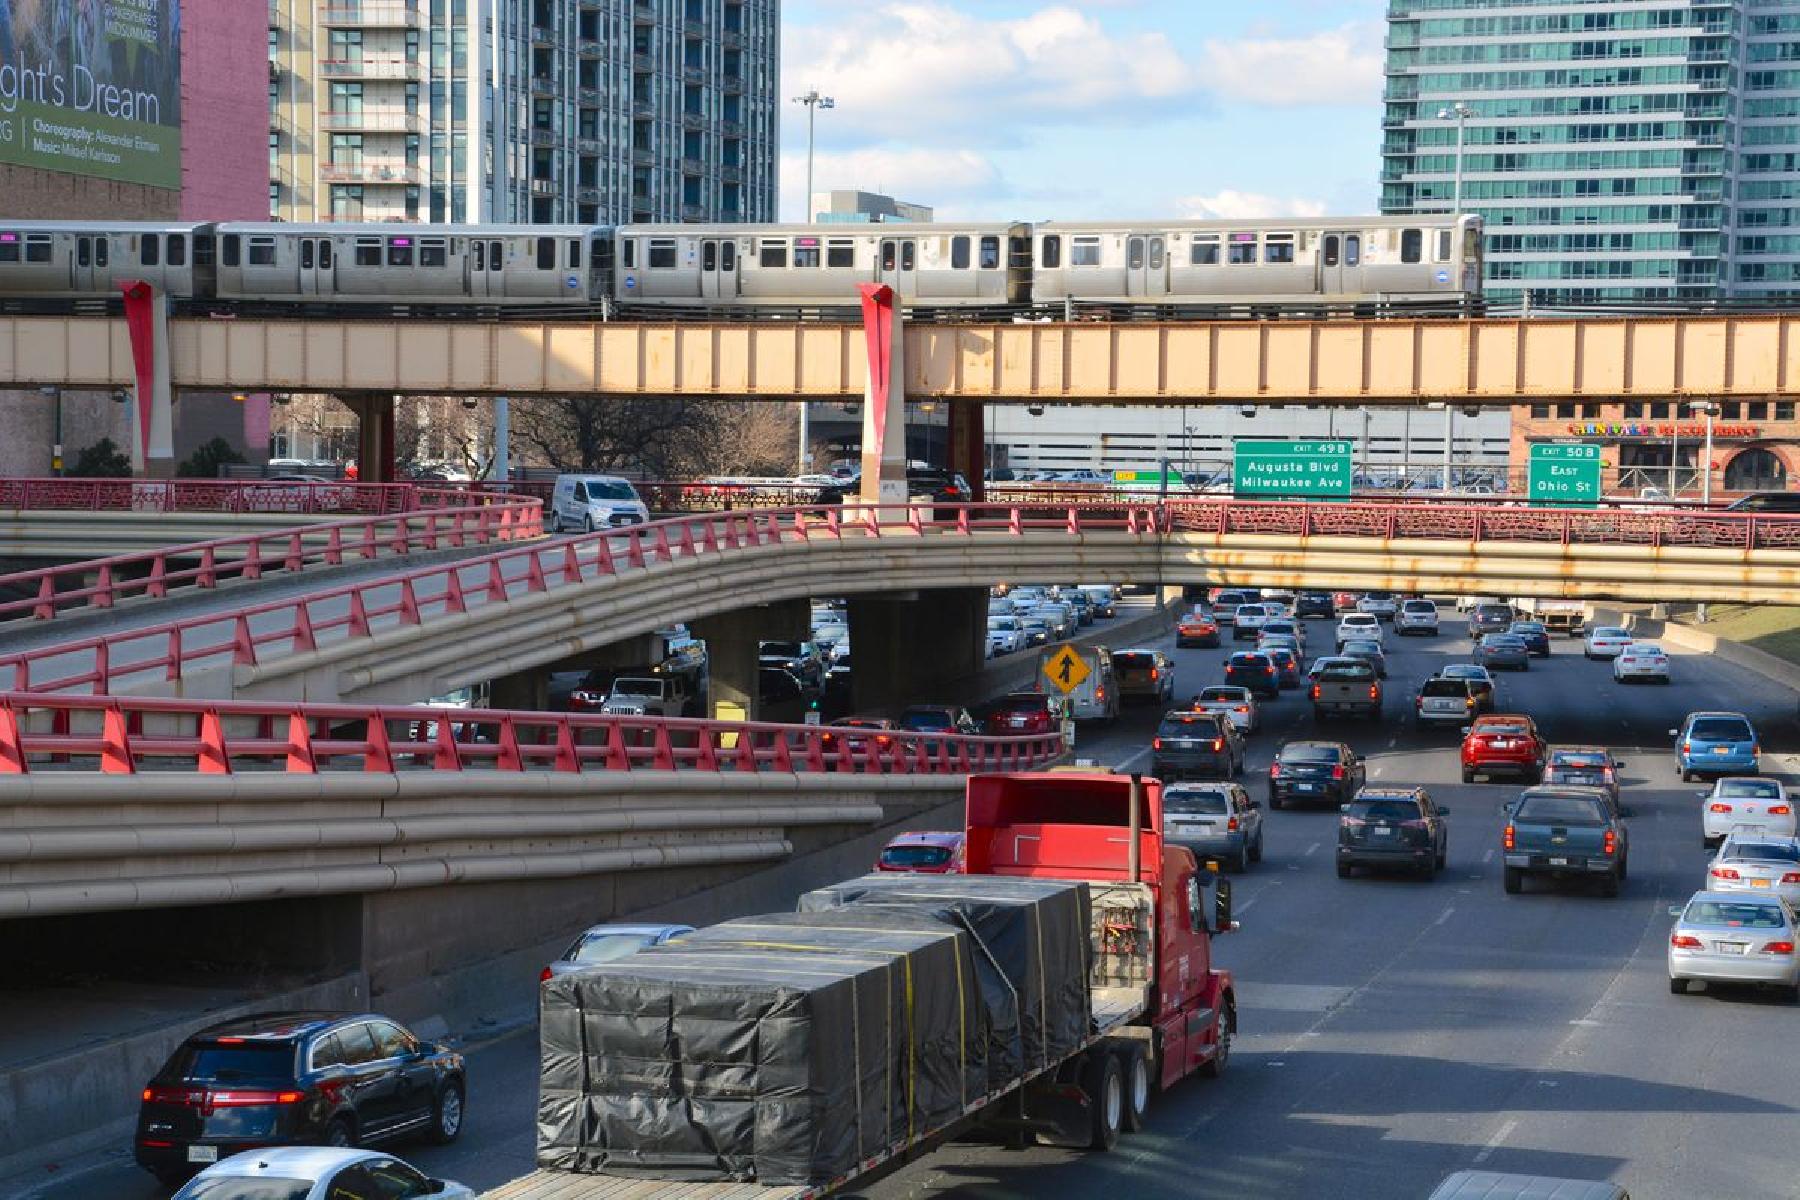 London i Chicago su u samom vrhu liste najzakrčenijih gradova svijeta kada je riječ o saobraćajnim gužvama